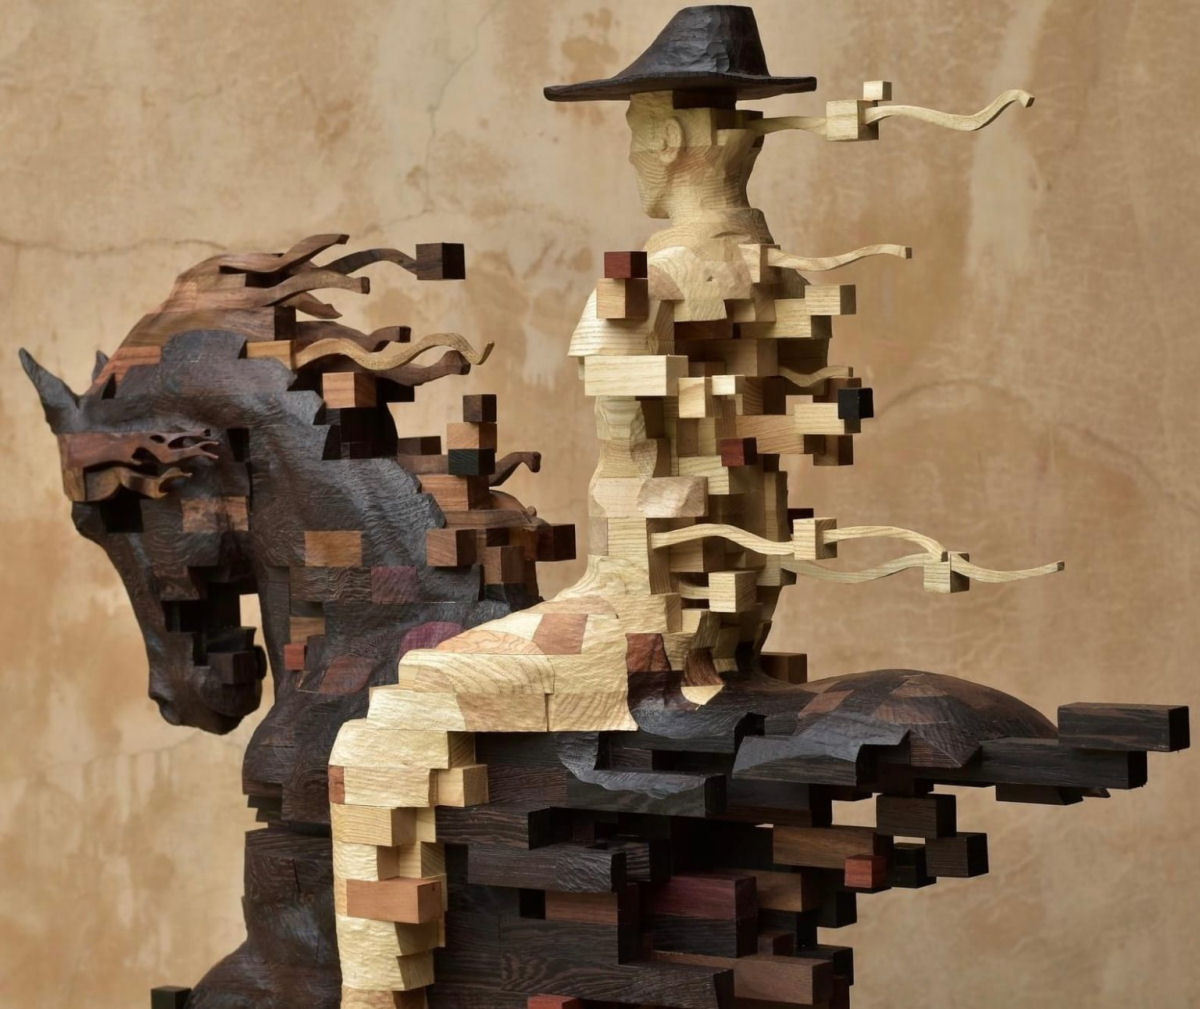 Esculturas figurativas parecem se fragmentar com pixels de madeira 04